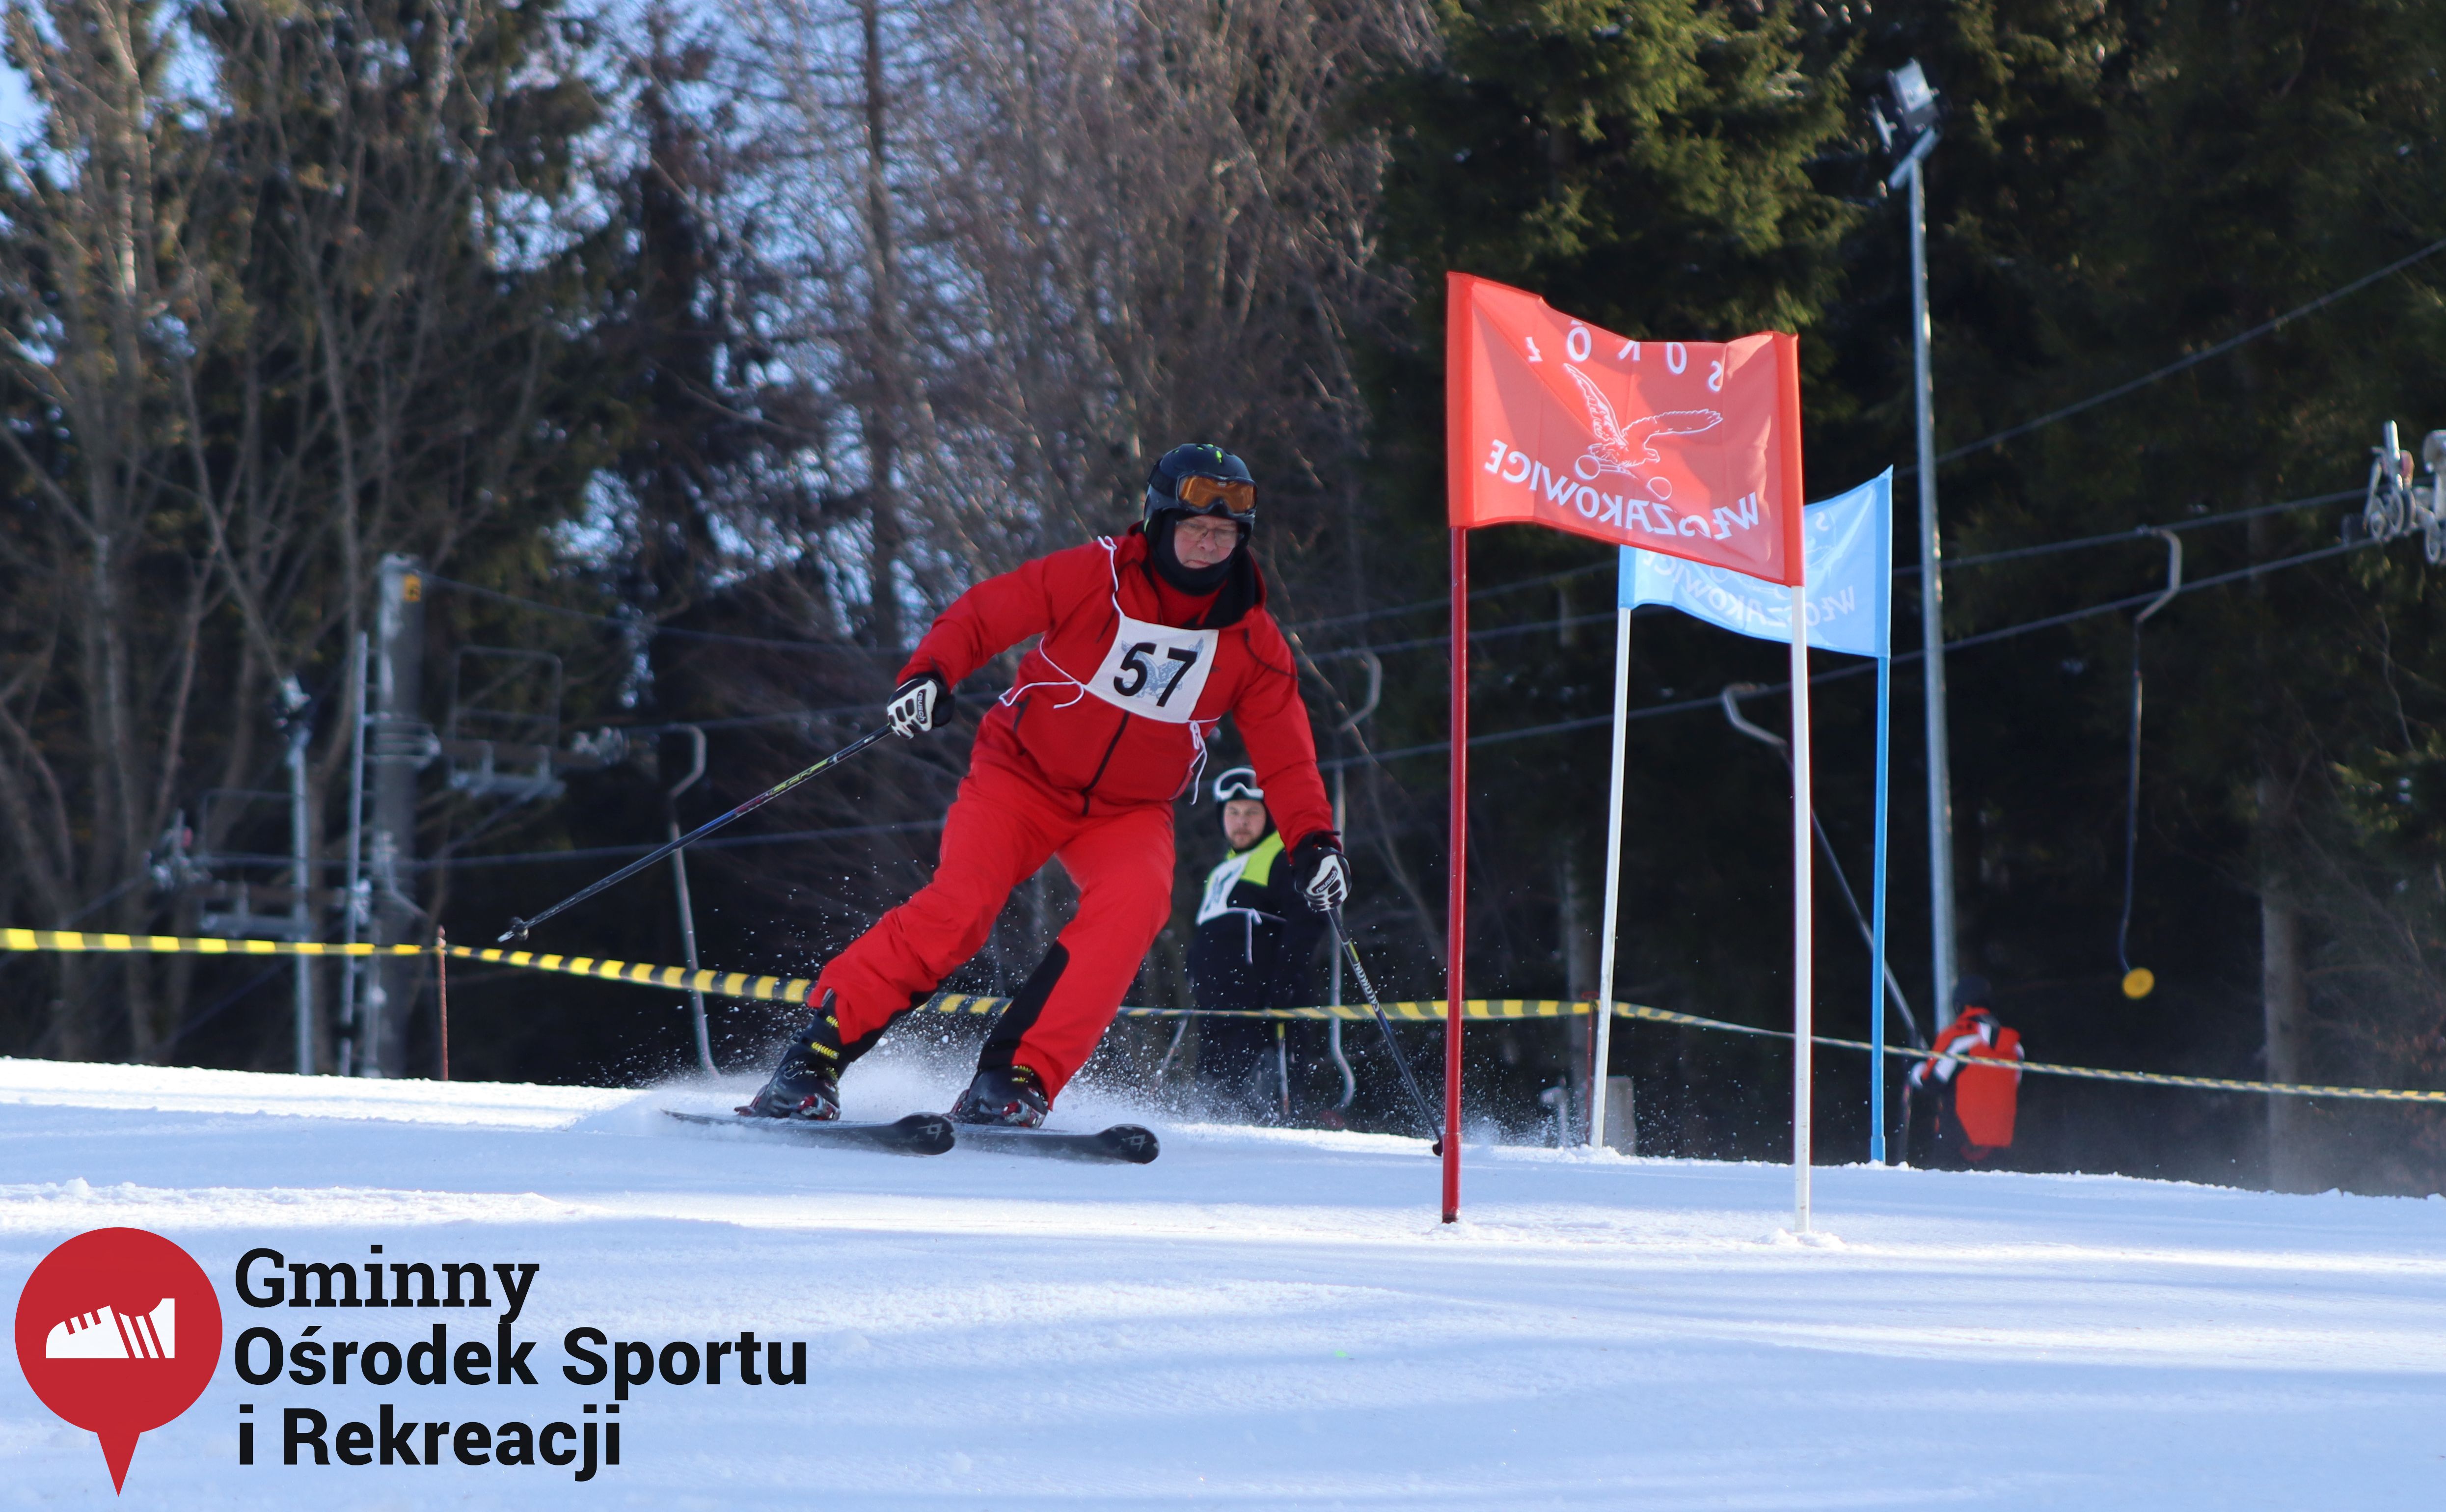 2022.02.12 - 18. Mistrzostwa Gminy Woszakowice w narciarstwie030.jpg - 1,22 MB